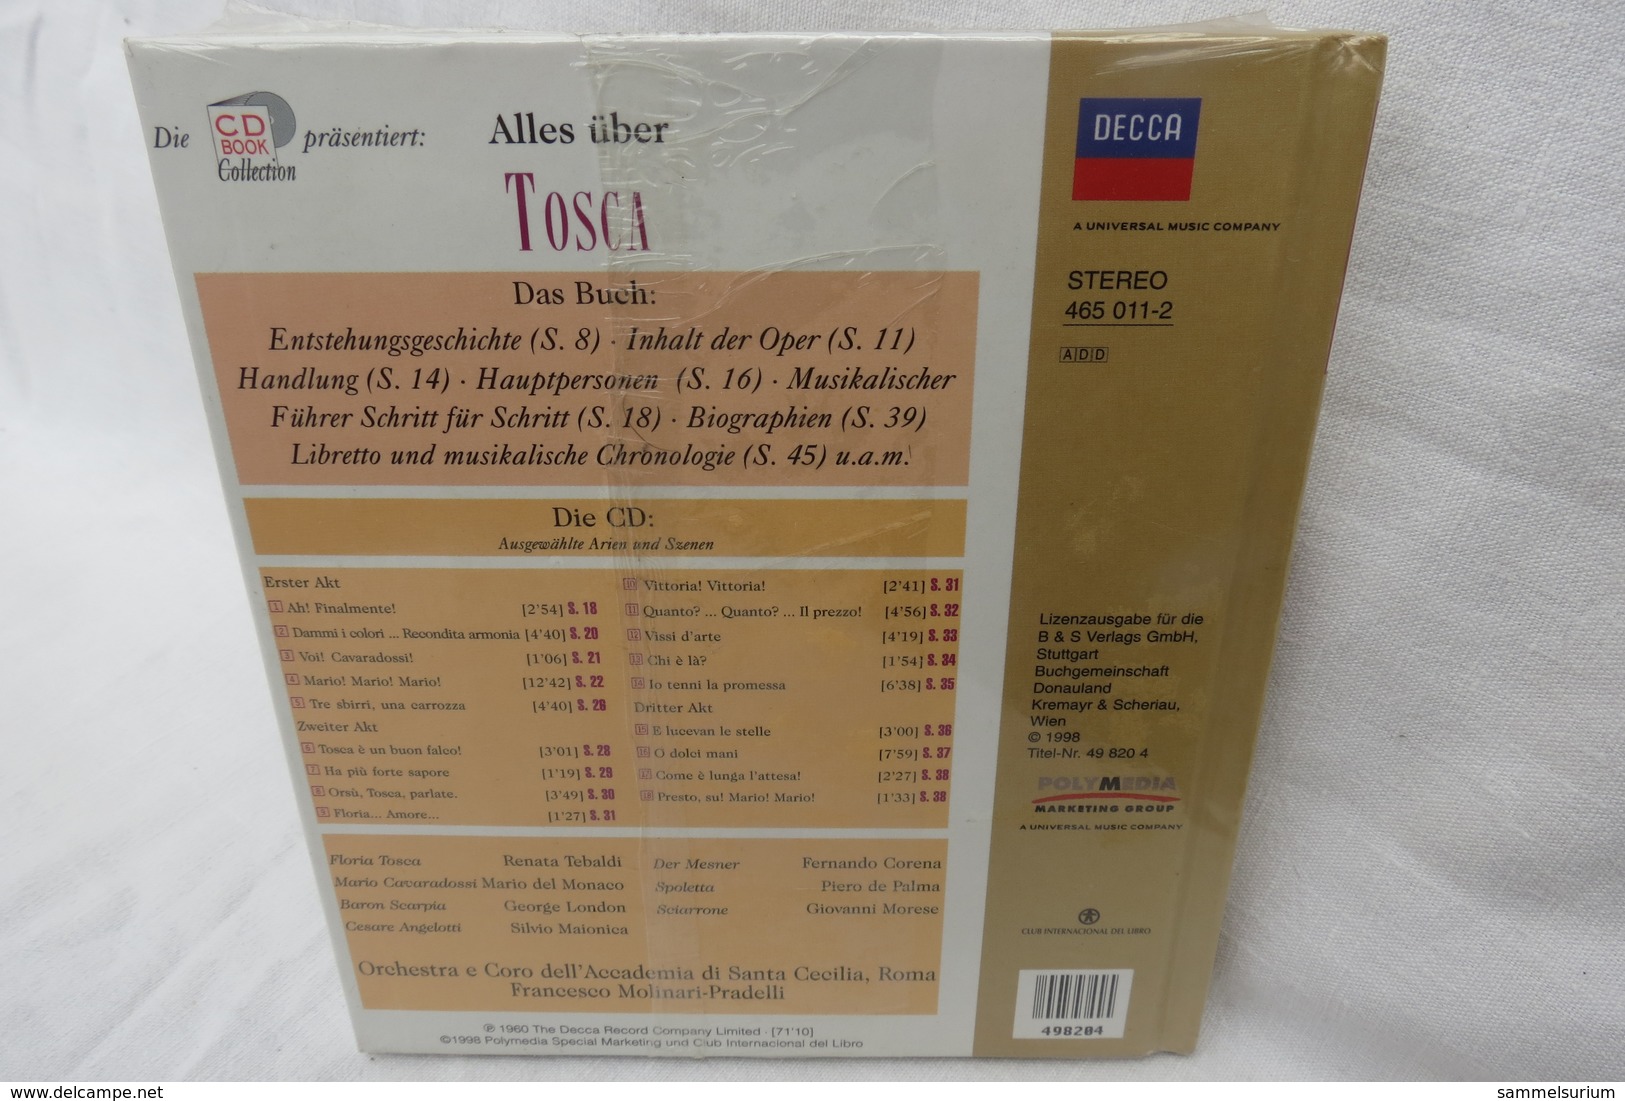 CD "TOSCA Von Giacomo Puccini" Mit Buch Aus Der CD Book Collection (ungeöffnet, Original Eingeschweißt) - Opera / Operette